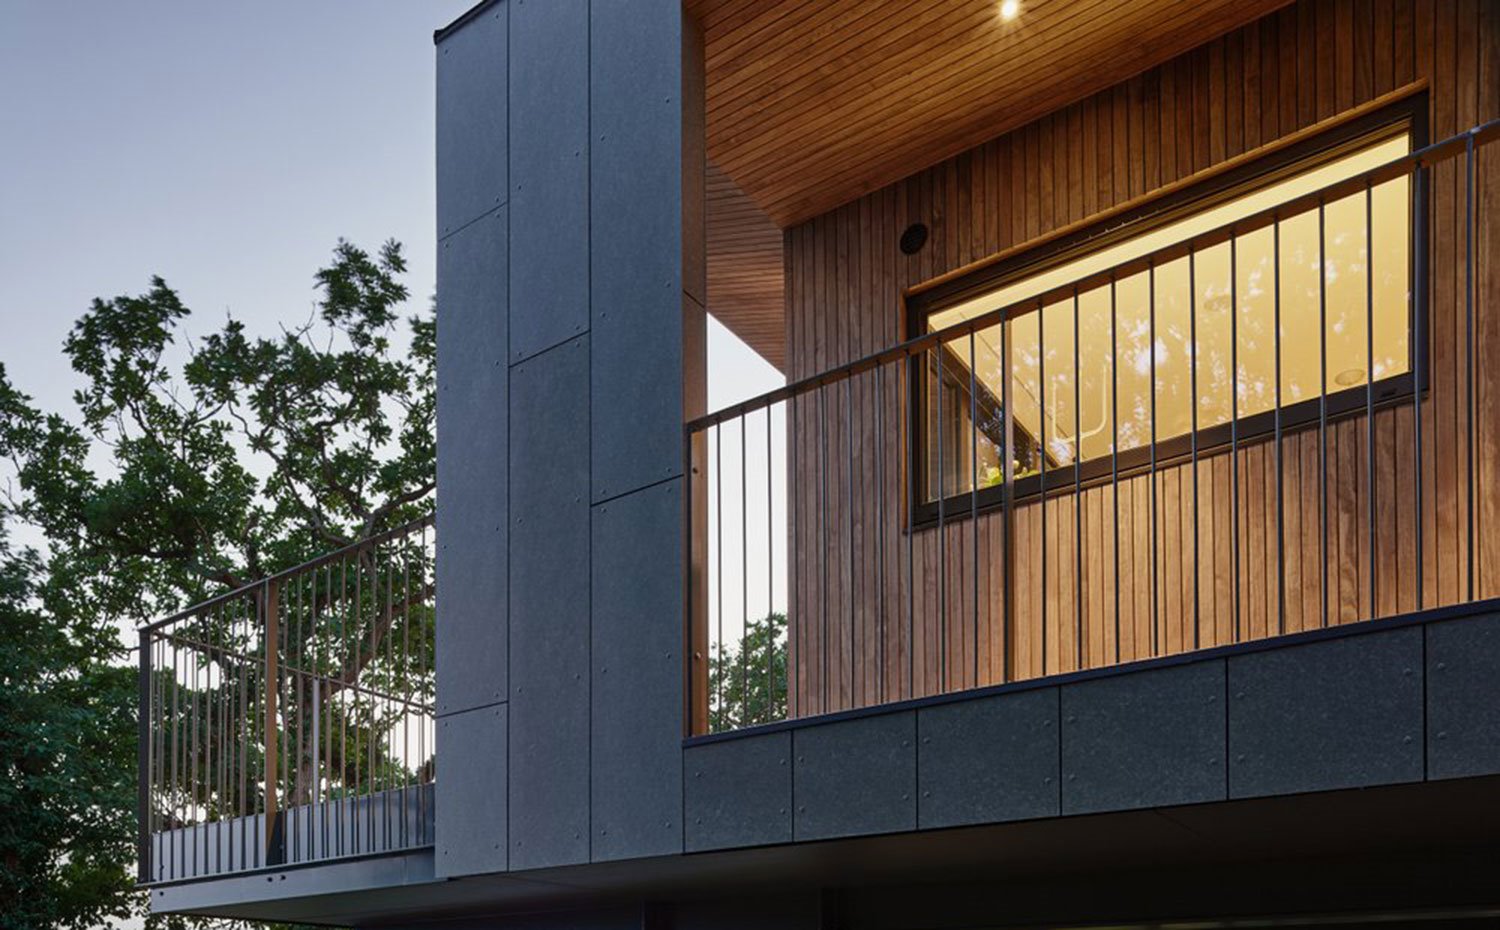 Terraza con fachada y cubierta de madera alistonada y amplias aperturas horizontales